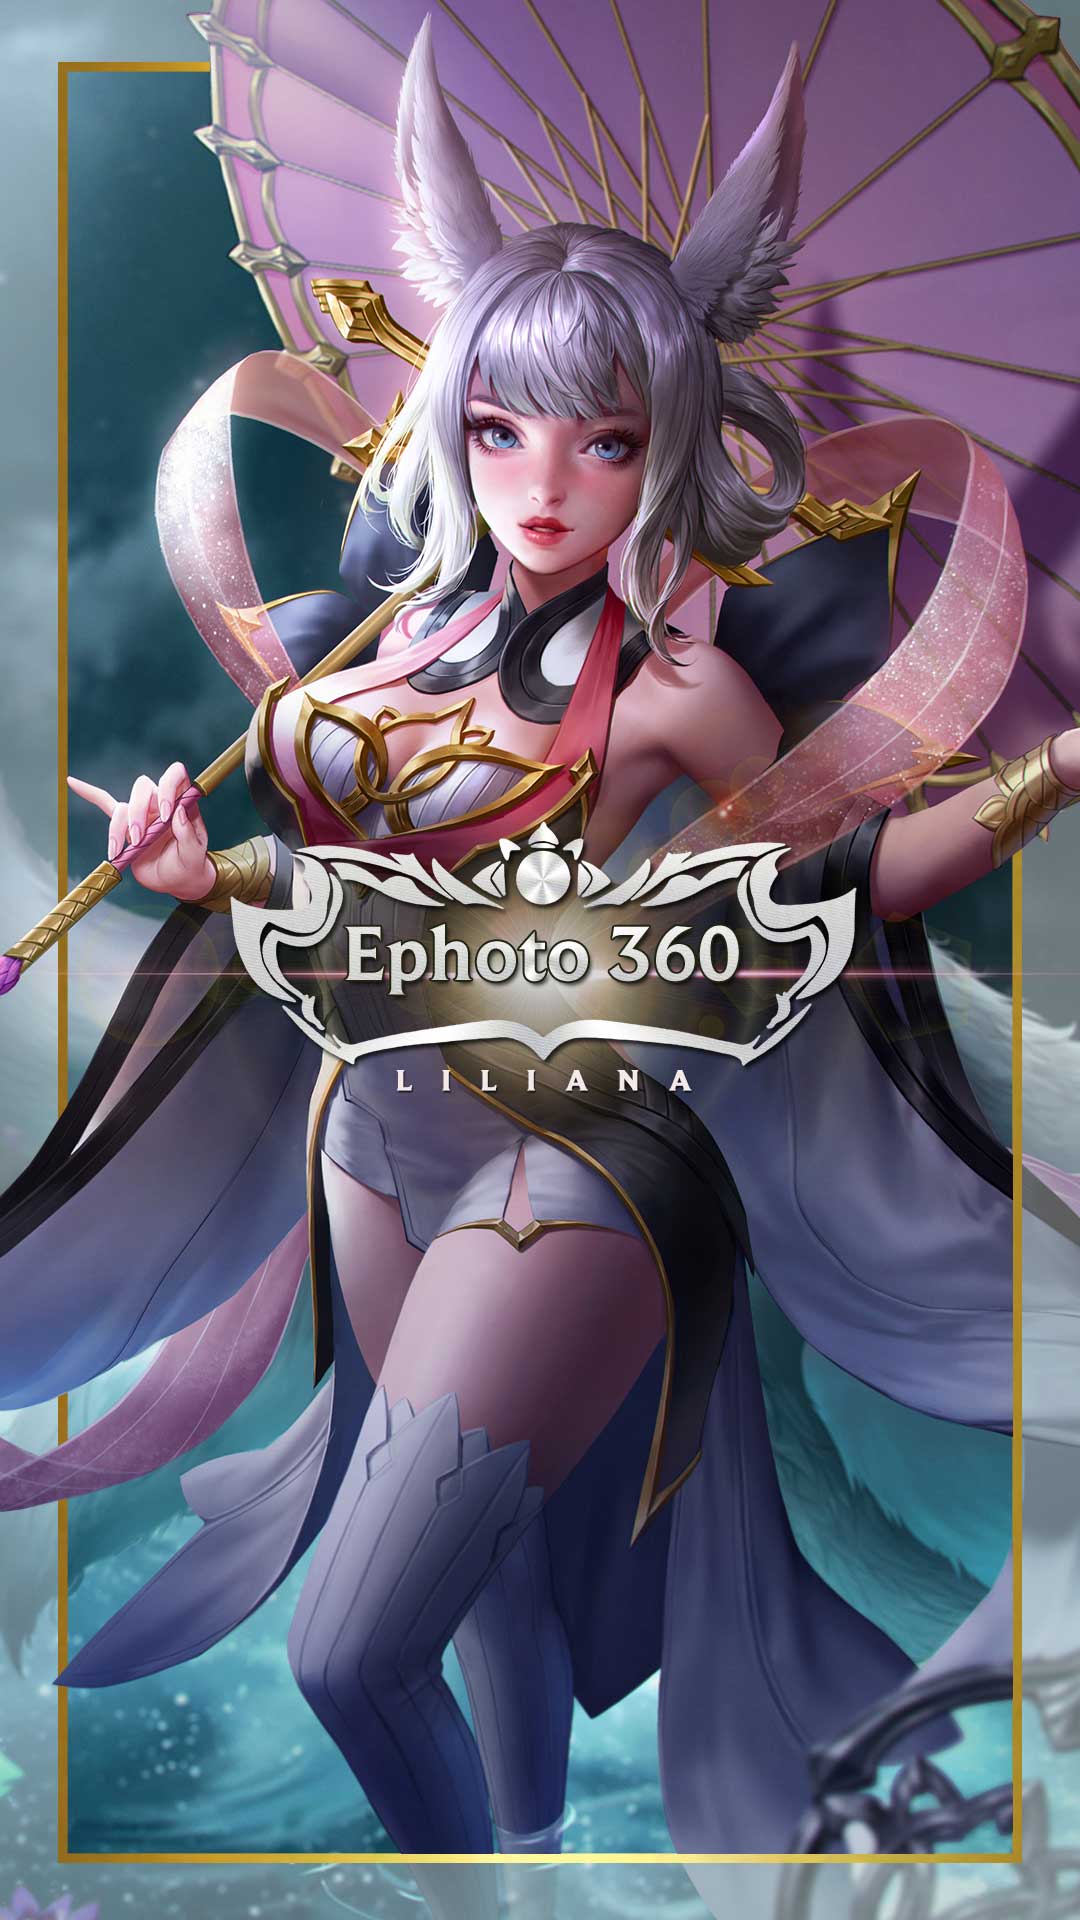 Sự kiện Liên Quân đang diễn ra và không thể bỏ lỡ bức ảnh Liliana đẹp mê hồn này. Với khả năng chống đỡ và tấn công đa dạng, cùng phong cách độc đáo, Liliana là một trong những nhân vật được yêu thích nhất của game thủ.